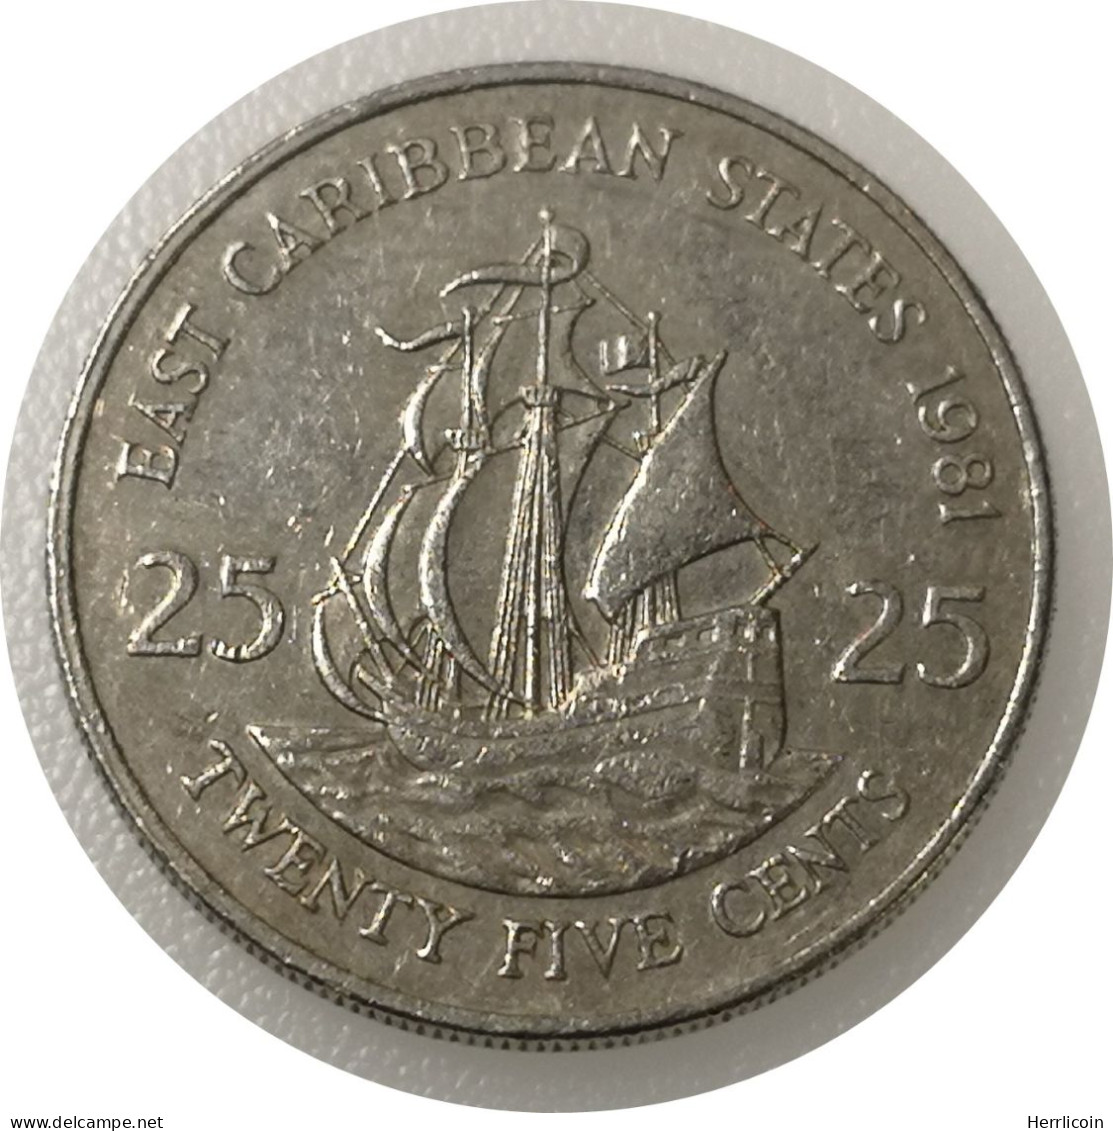 Monnaie Caraïbes - 1981 - 25 Cents Elizabeth II 2e Effigie - Territoires Britanniques Des Caraïbes